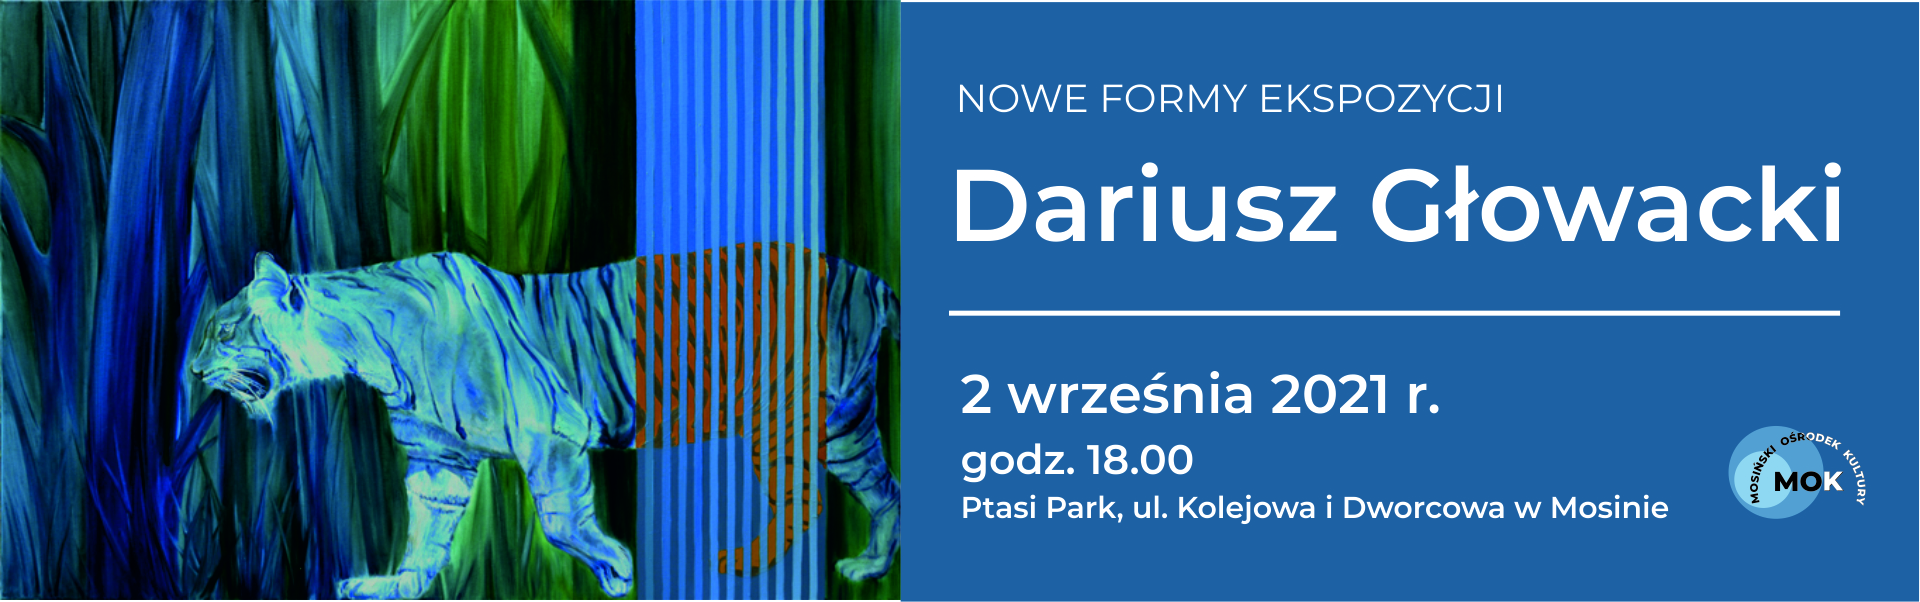 obraz Dariusza Głowackiego przedstawiający tygrysa na tle buszu, część zwierzęcia przechodzi przez paski. tekst zaproszenia nowe formy ekspozycji, Dariusz Głowacki, 2 września 2021